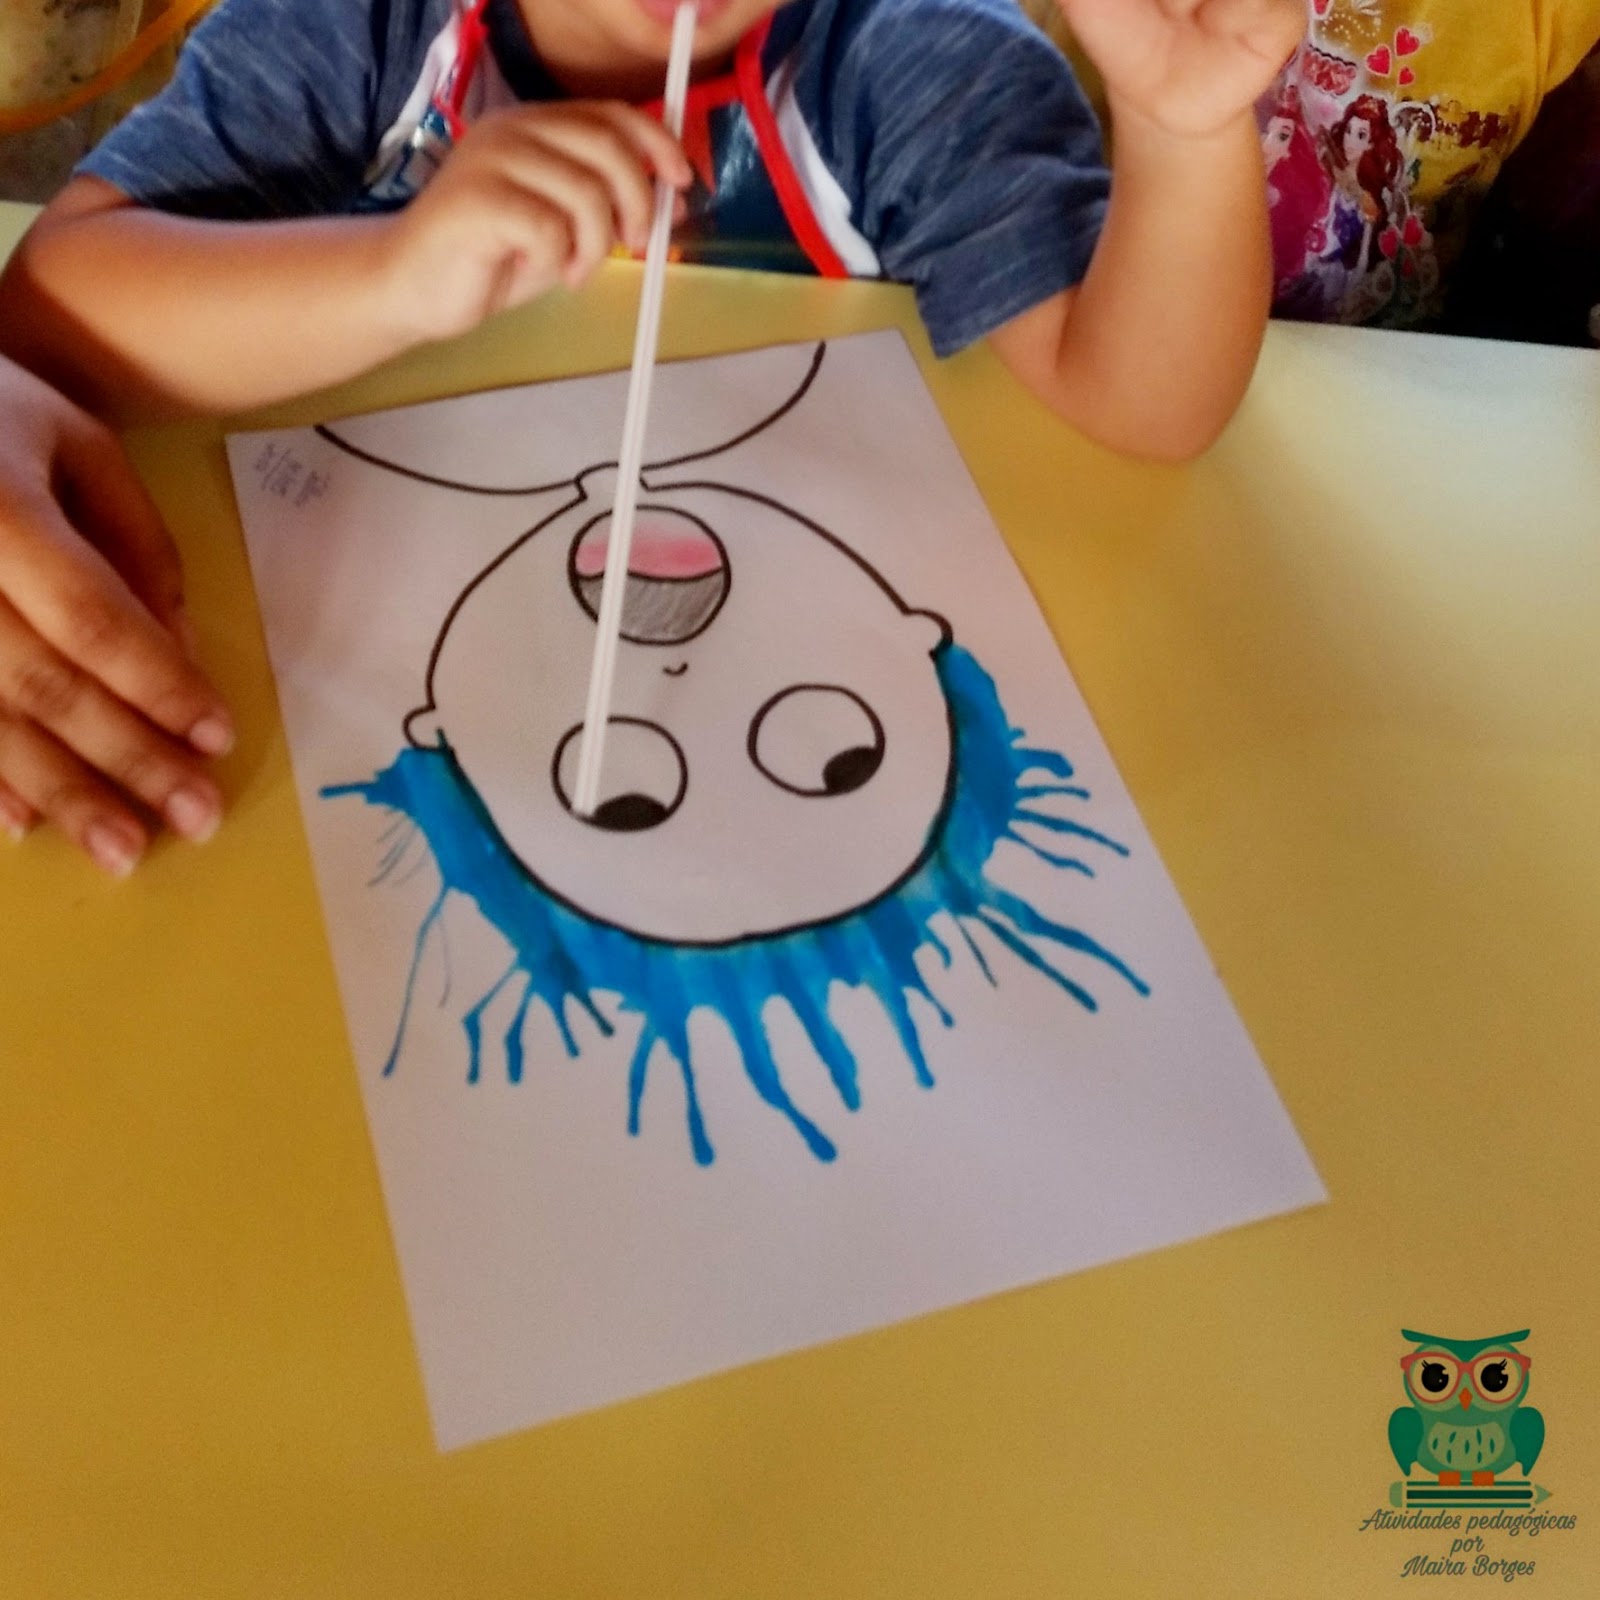 Qual o objetivo de trabalhar pintura na Educação Infantil?